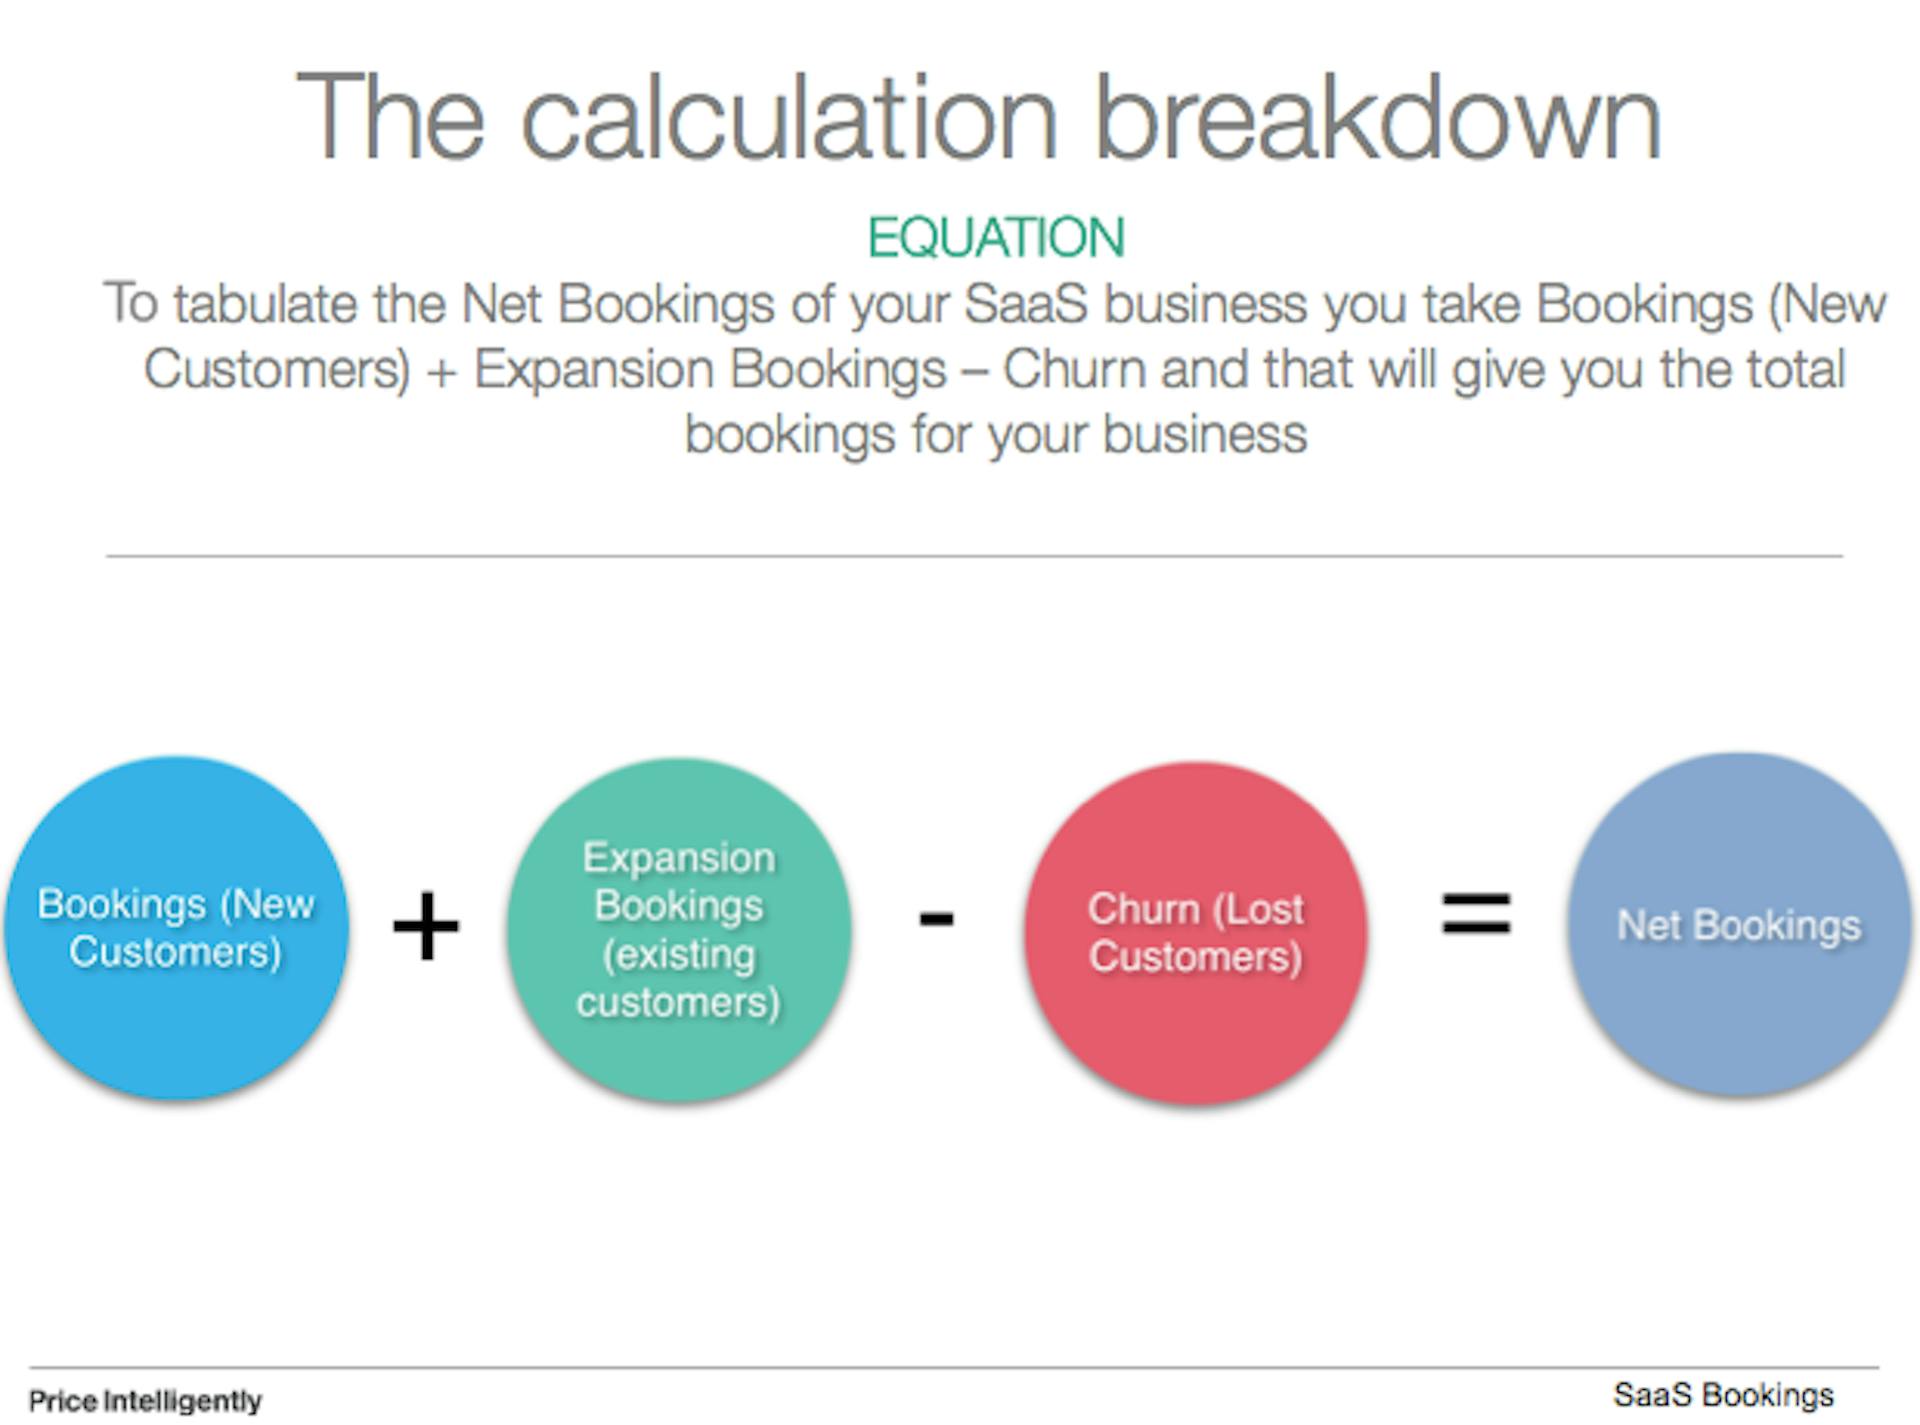 Net bookings calculation breakdown: Bookings from new customers + bookings from existing customers -  lost customers = net bookings